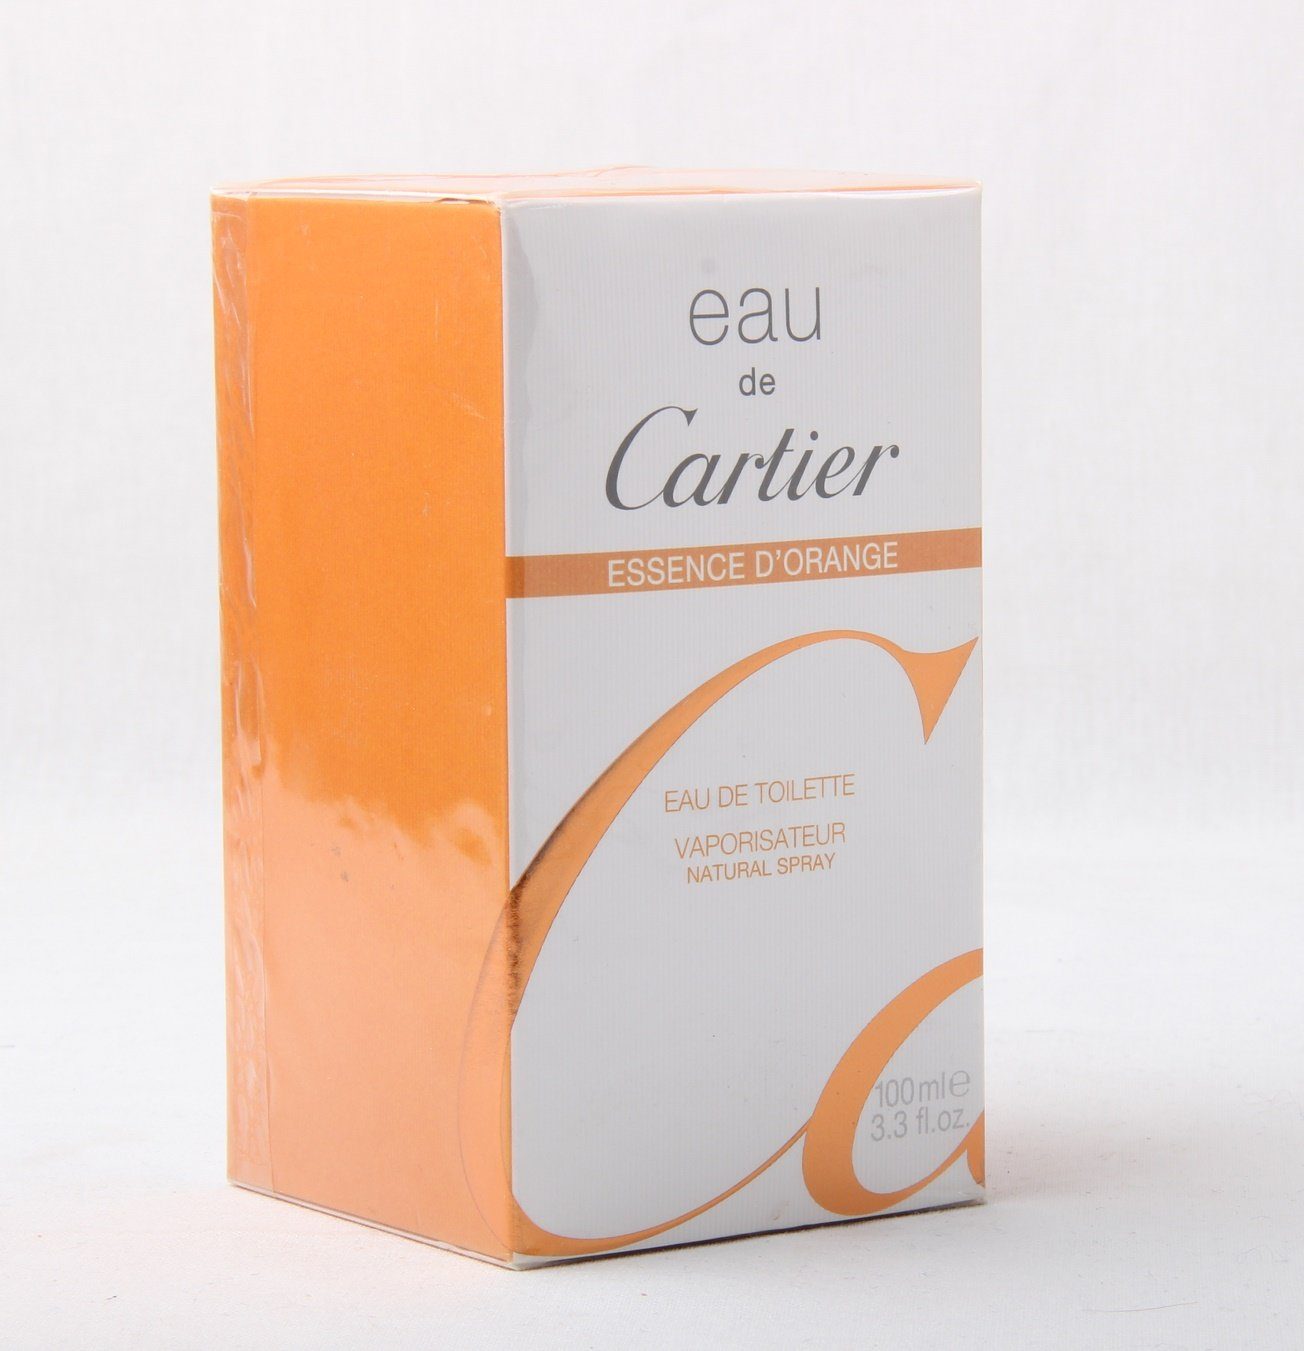 Cartier Eau de Toilette Eau de Cartier Essence D'Orange Eau de Toilette Spray 100ml | Eau de Toilette